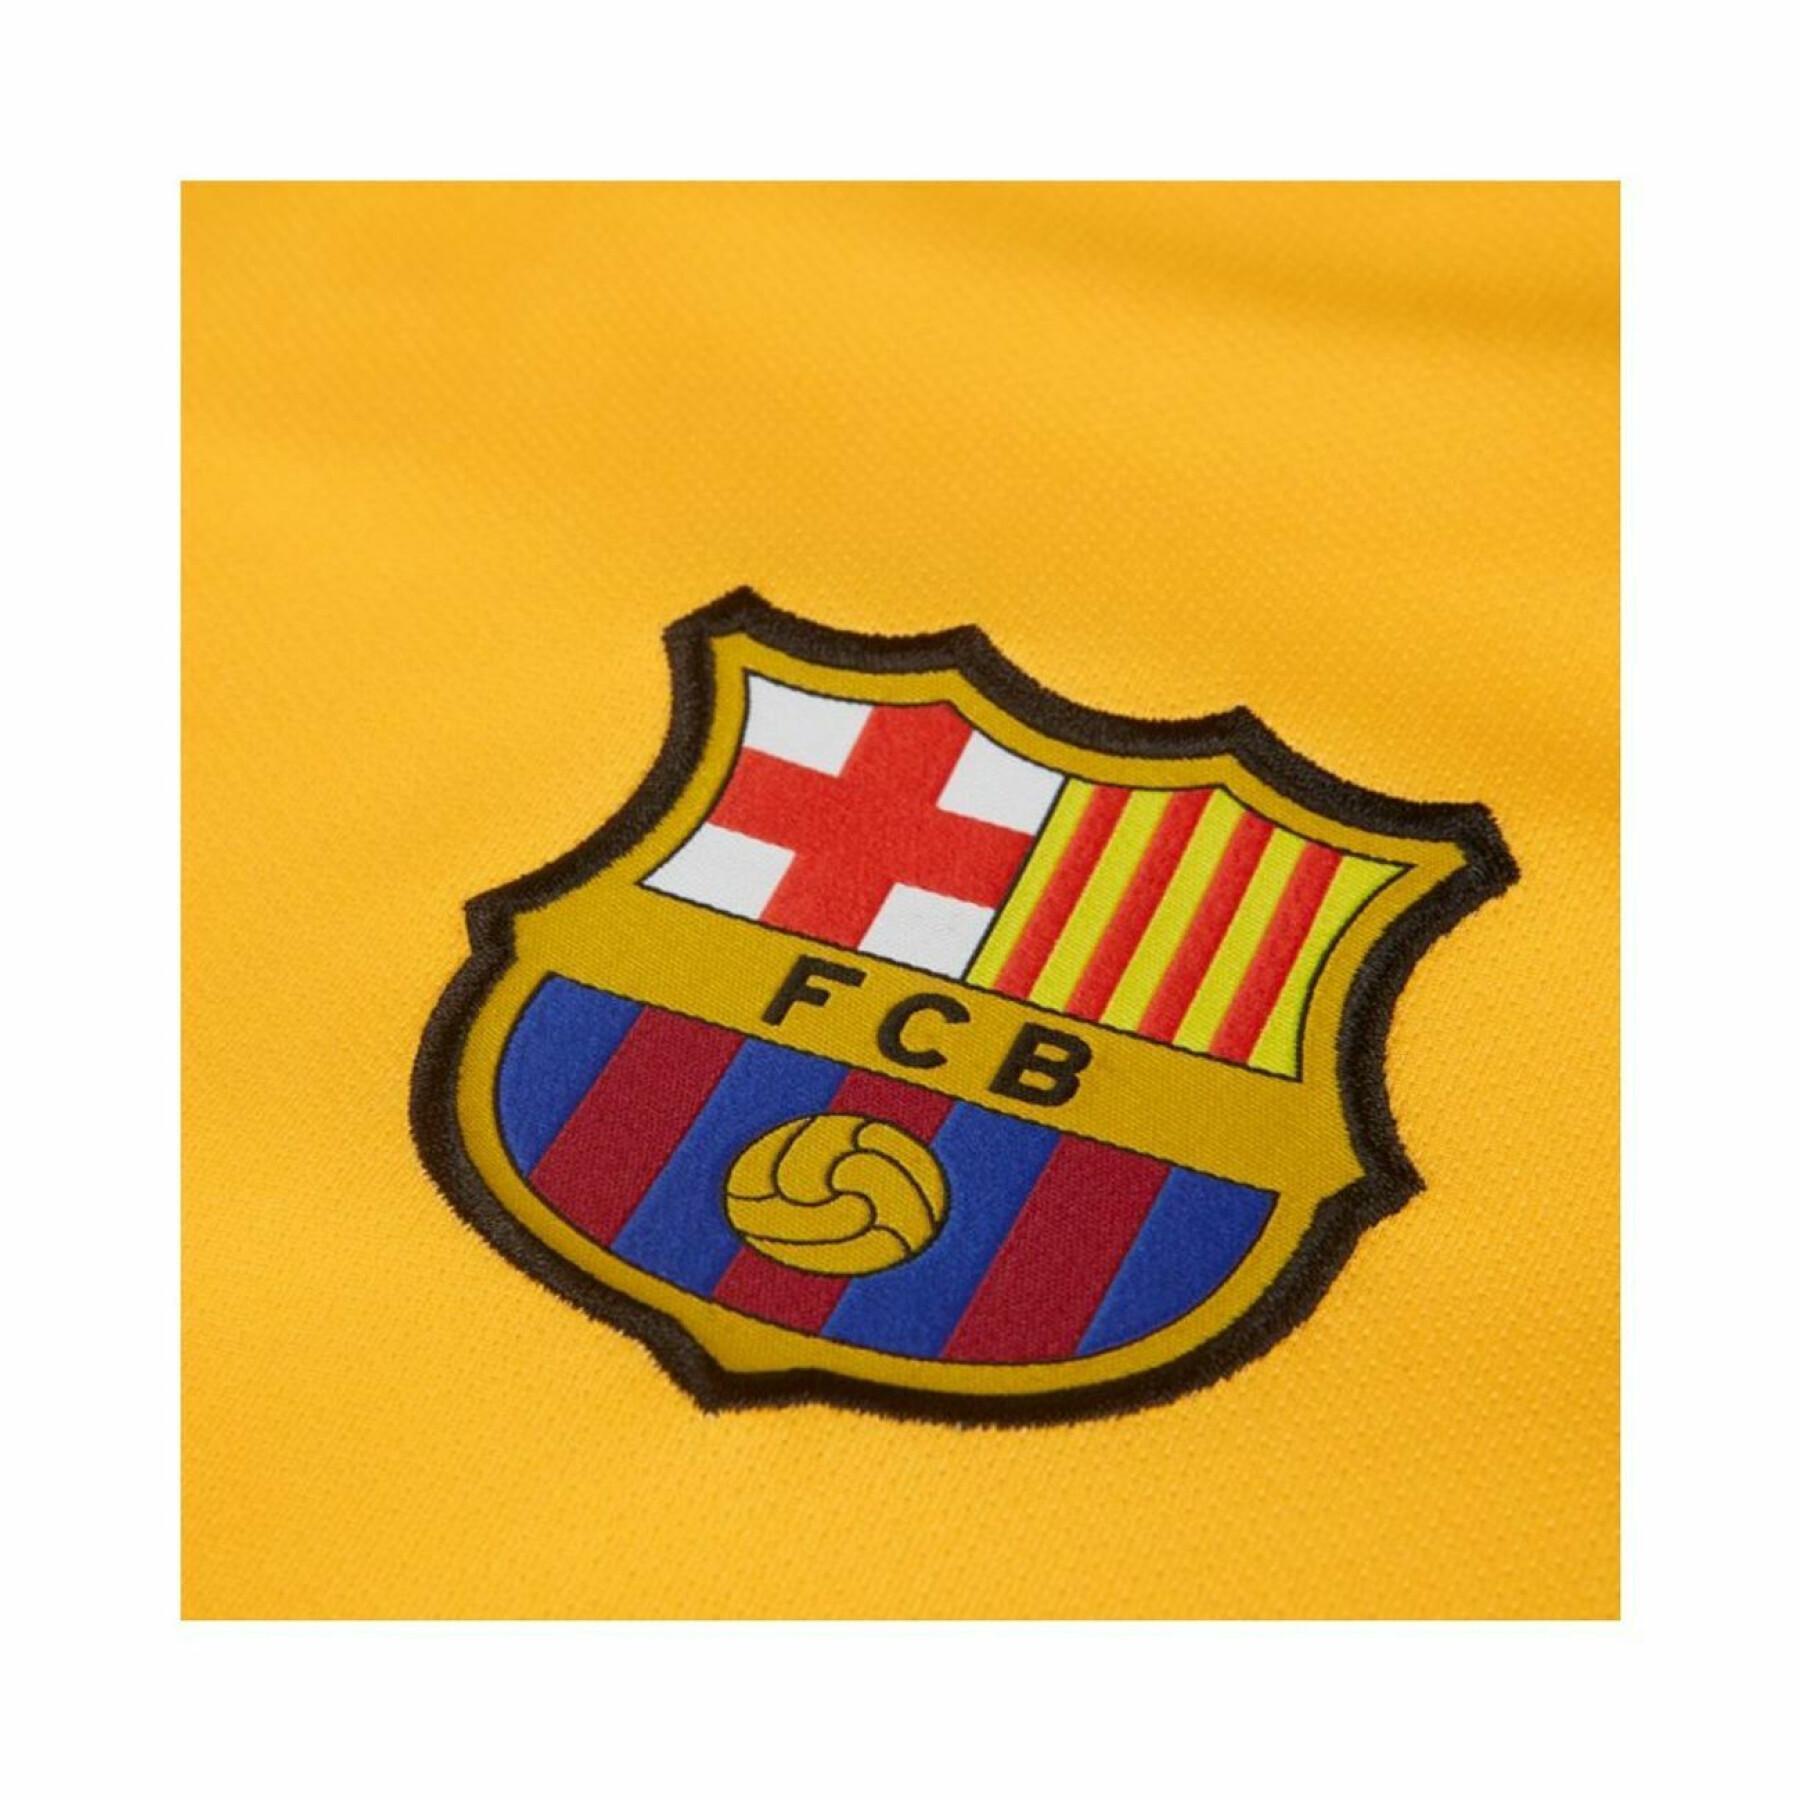 Barcelona outdoor jersey 2019/20